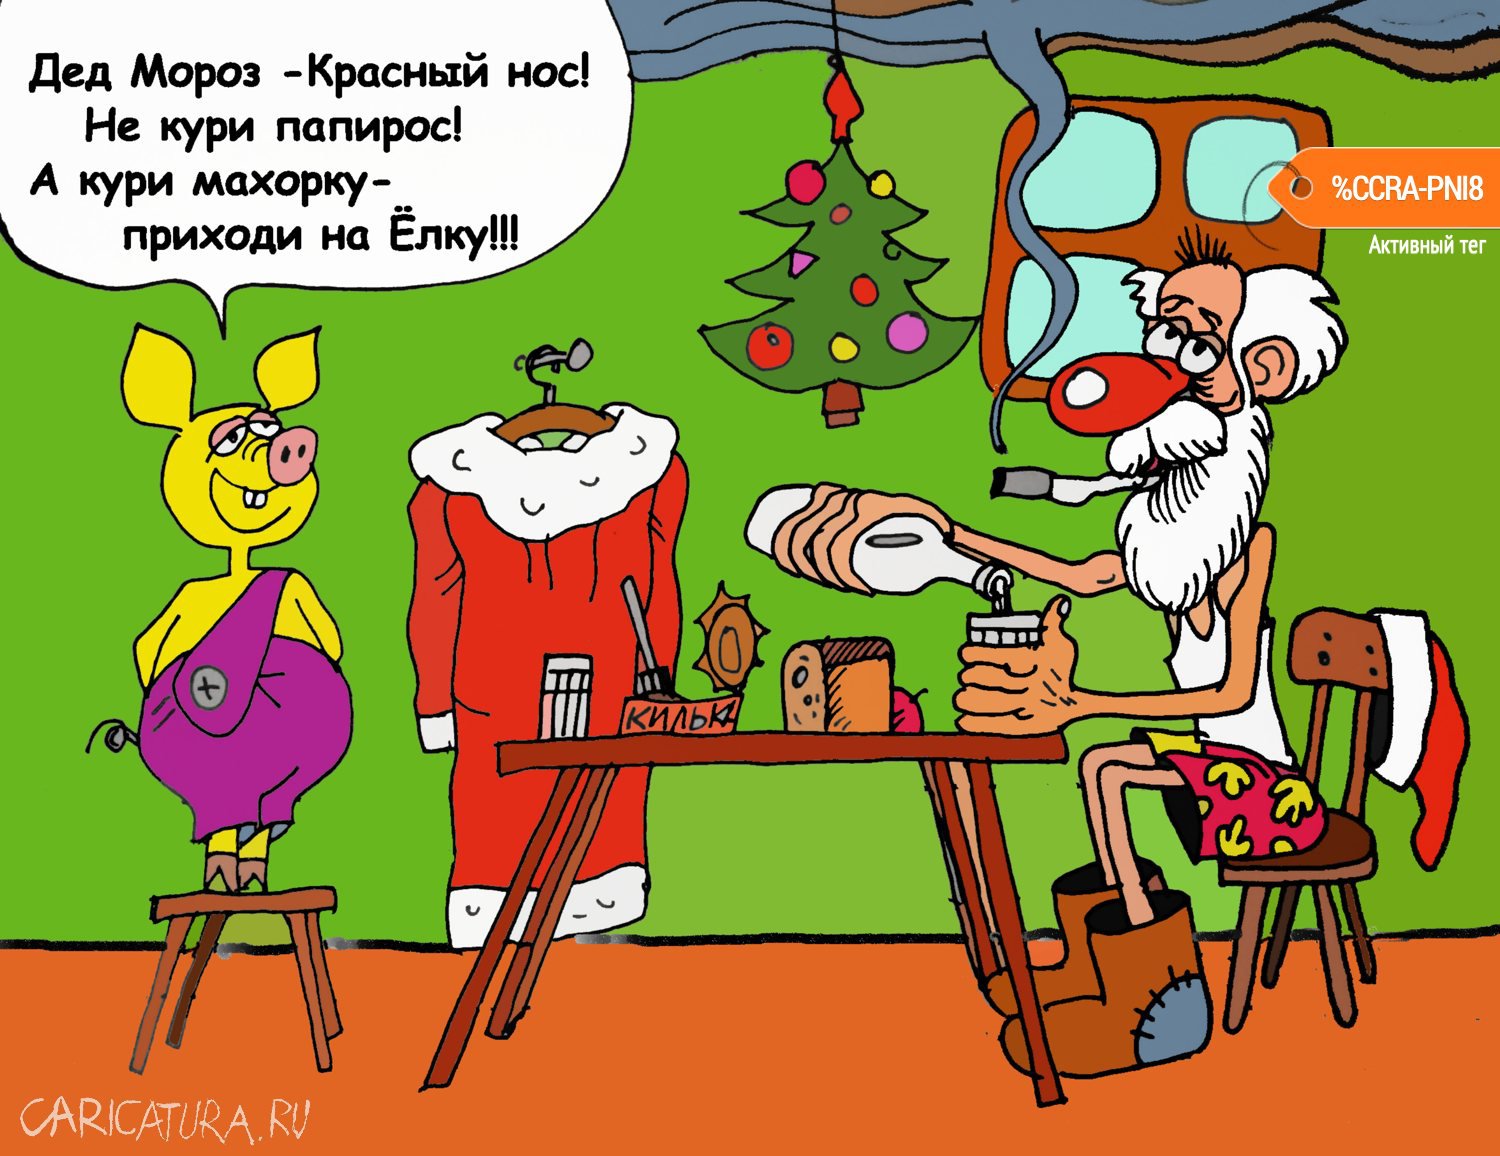 Карикатура "А теперь стих!", Юрий Величко